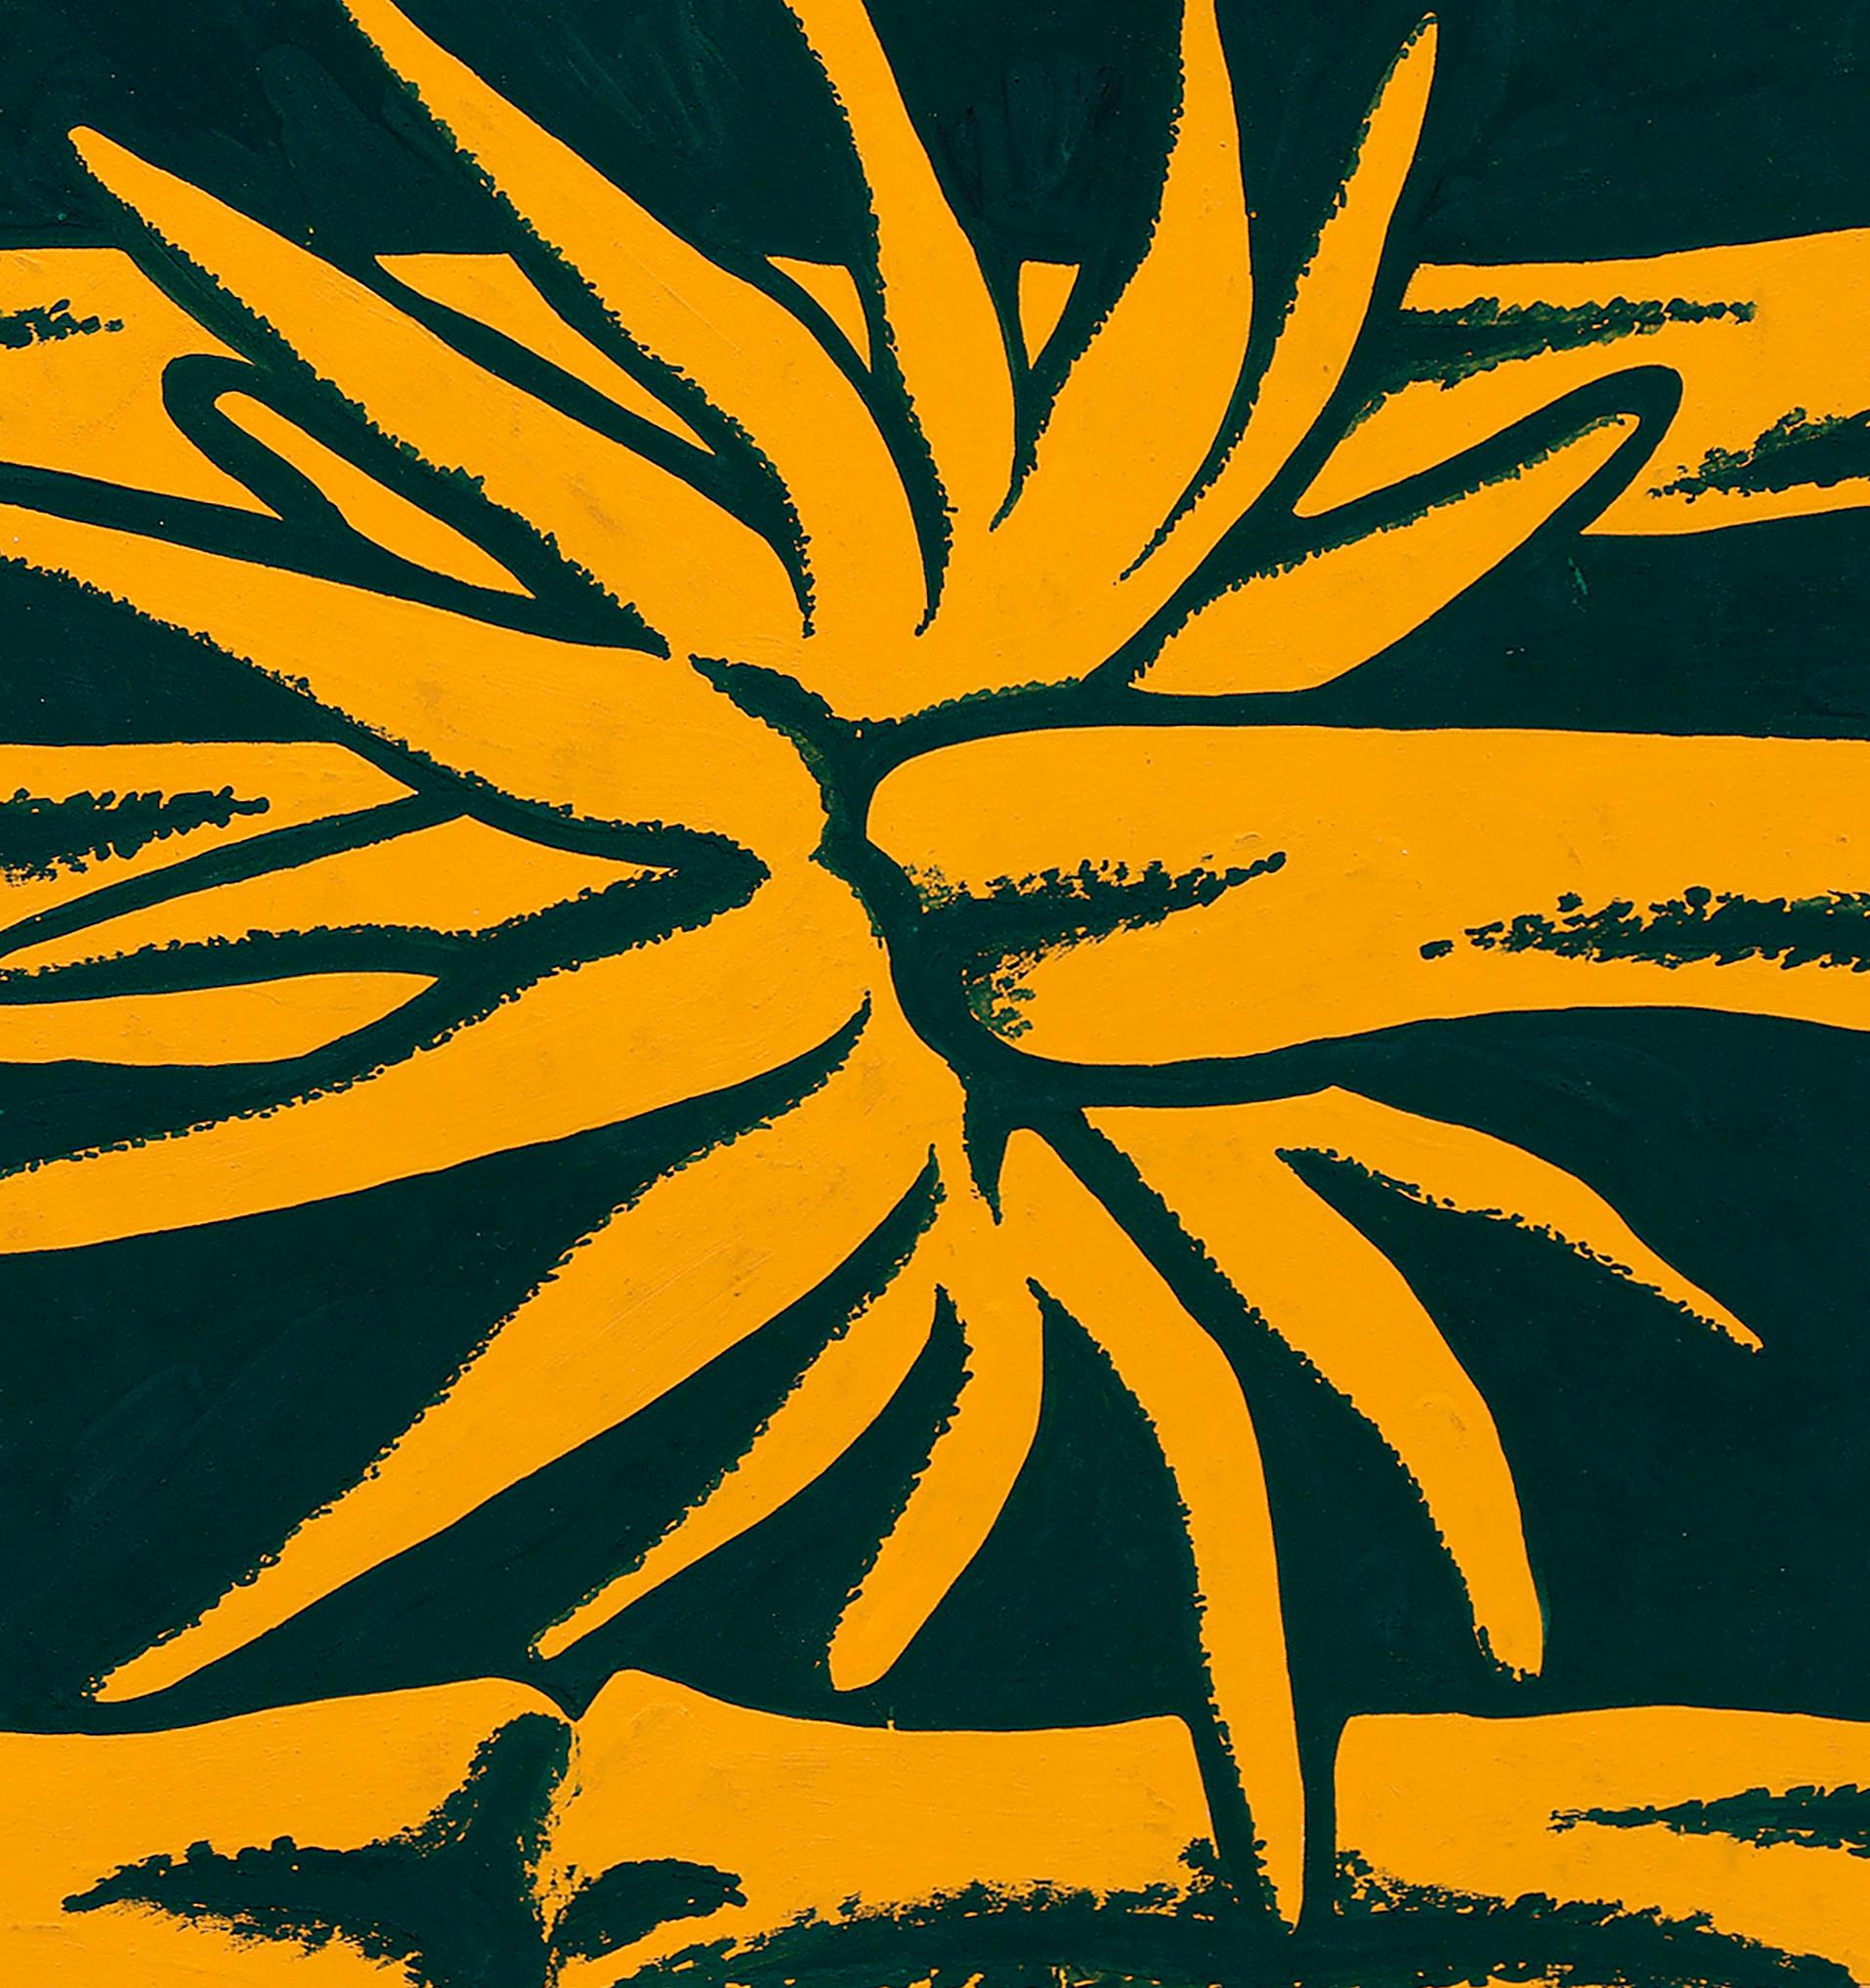 Conception textile originale des années 70 peinte à la main à la gouache, couleur orange et verte sur papier - Moderne Art par Unknown